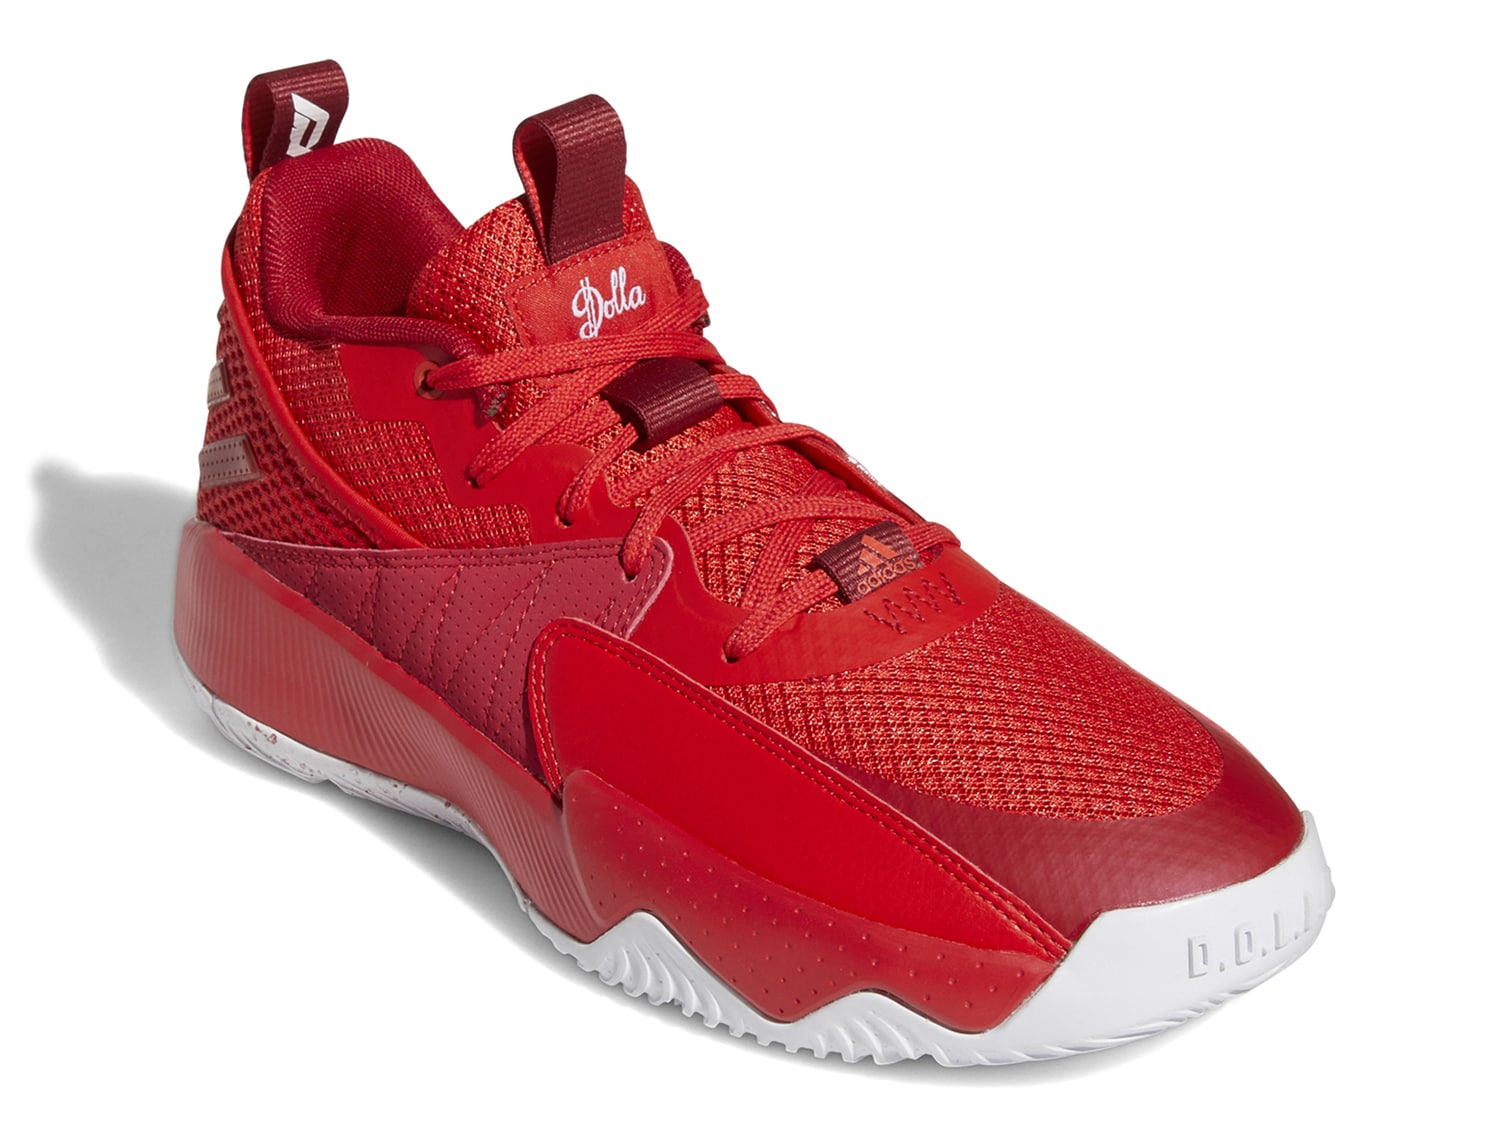 adidas men's dame 7 extply basketball shoes